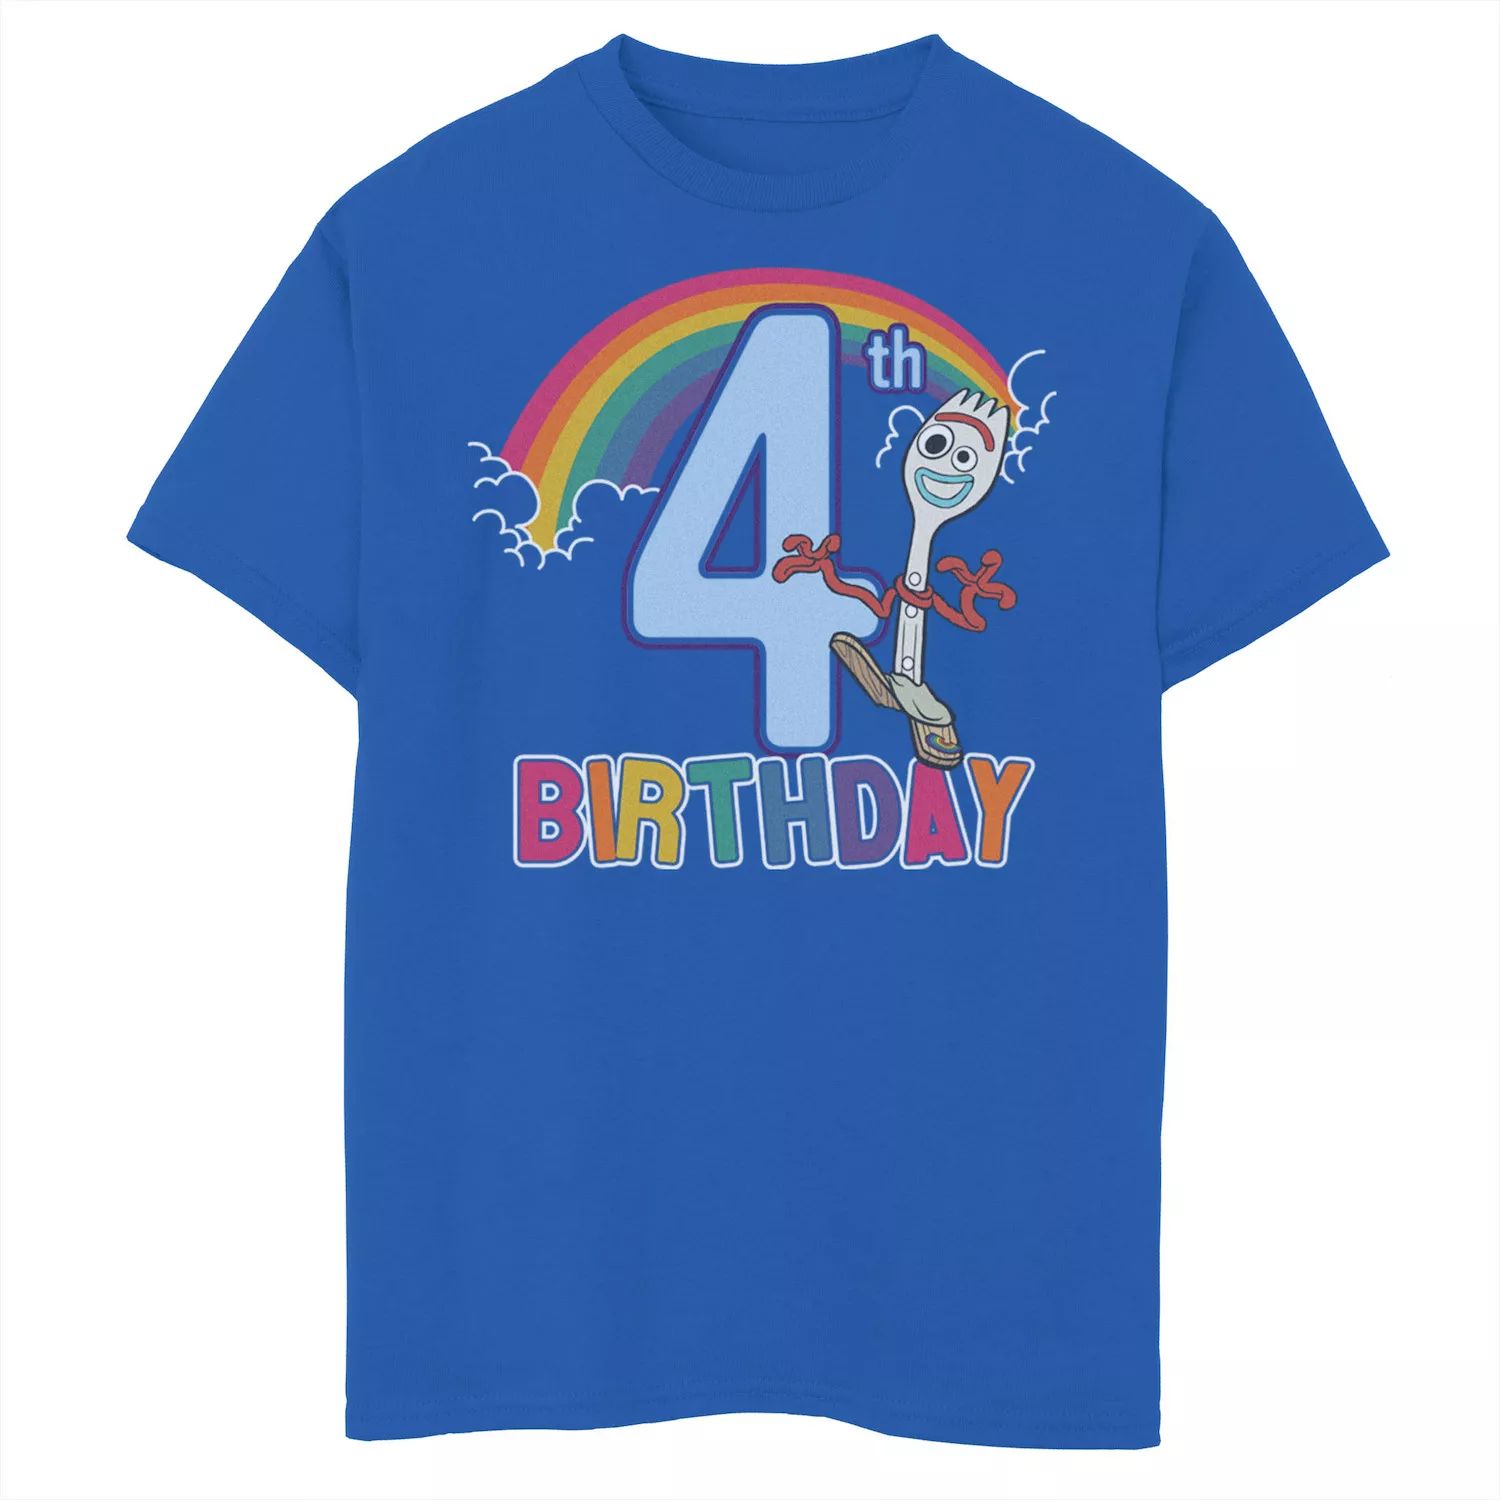 Футболка Forky с рисунком на день рождения «4th Rainbow» для мальчиков 8–20 лет Disney/Pixar «История игрушек 4» Disney / Pixar футболка forky с рисунком на 3 й день рождения для мальчиков 8–20 лет disney pixar история игрушек 4 disney pixar